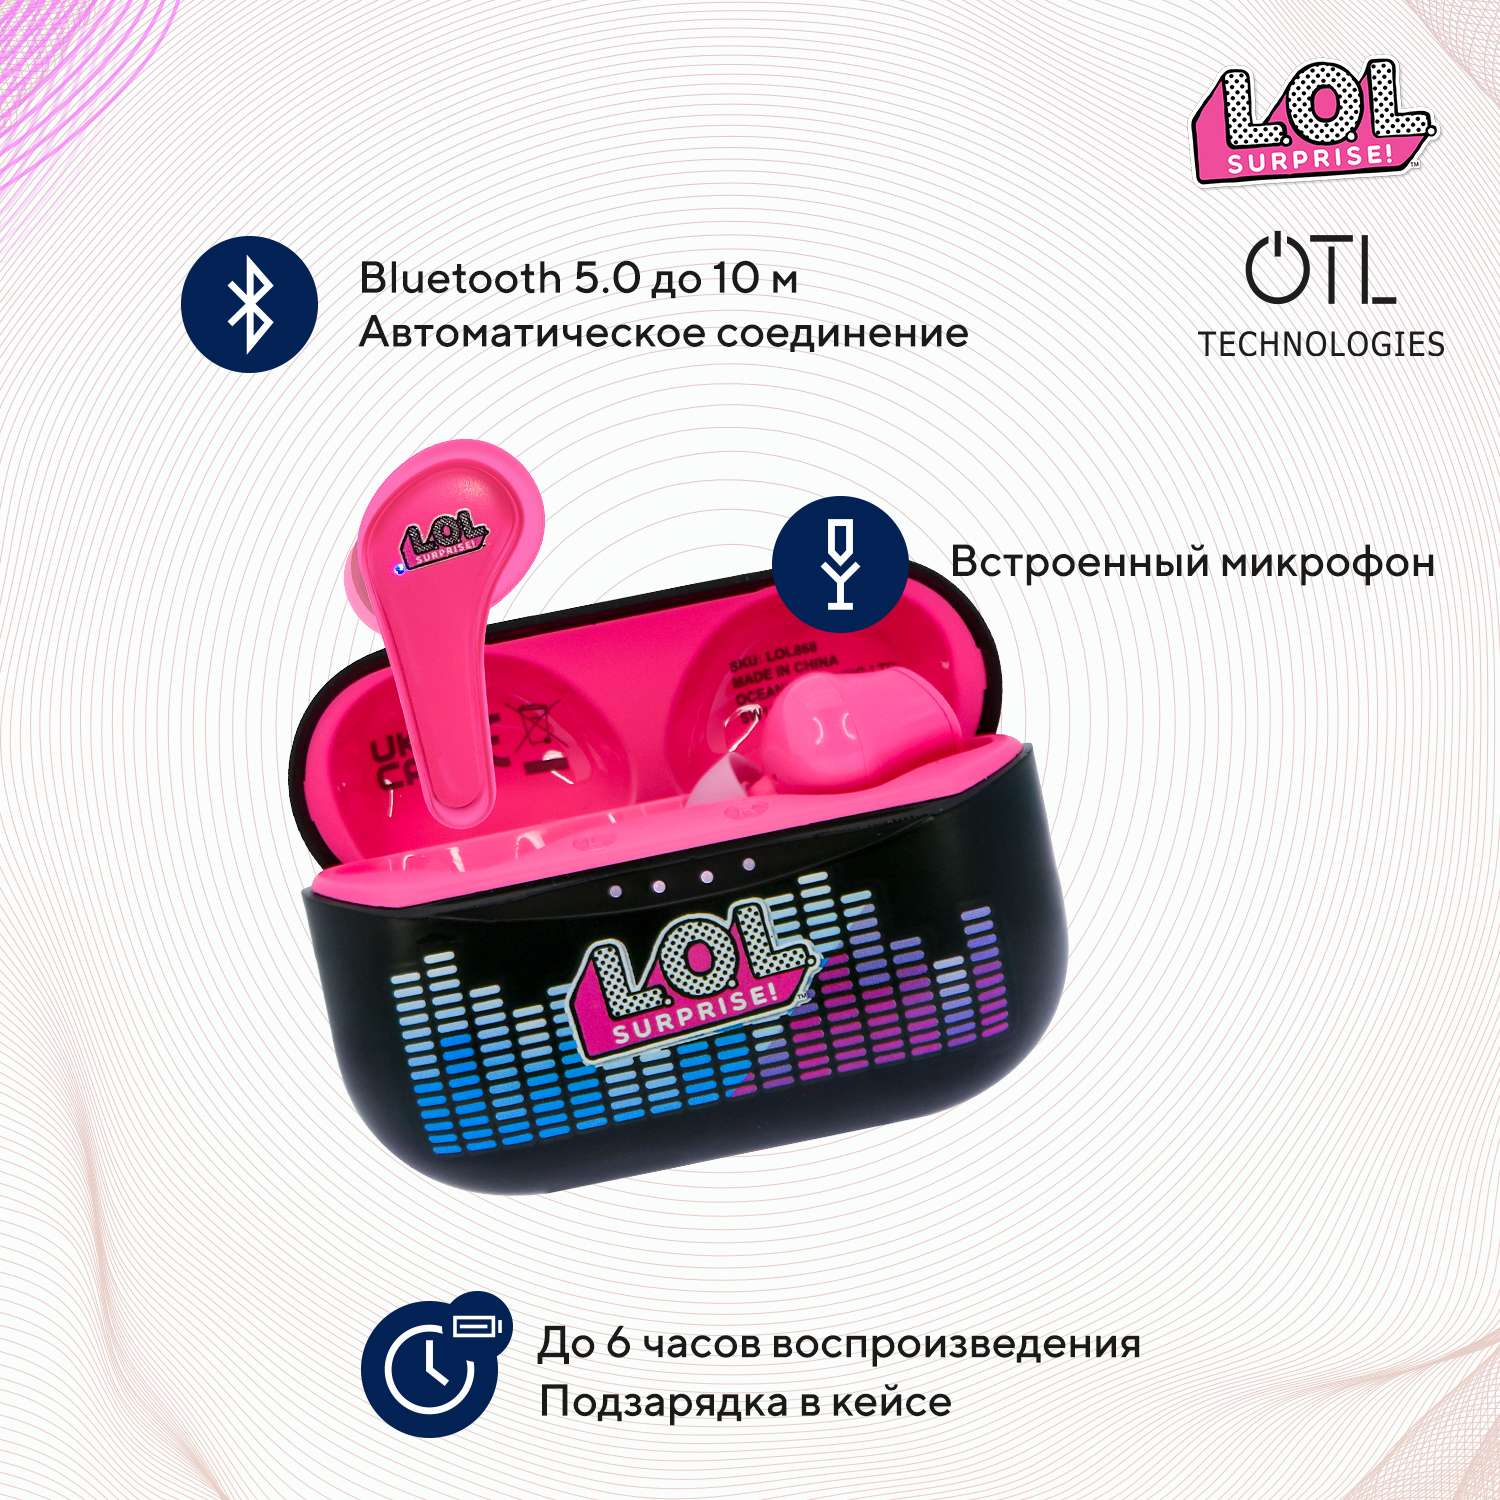 Наушники беспроводные OTL Technologies L.O.L. Surprise - фото 2